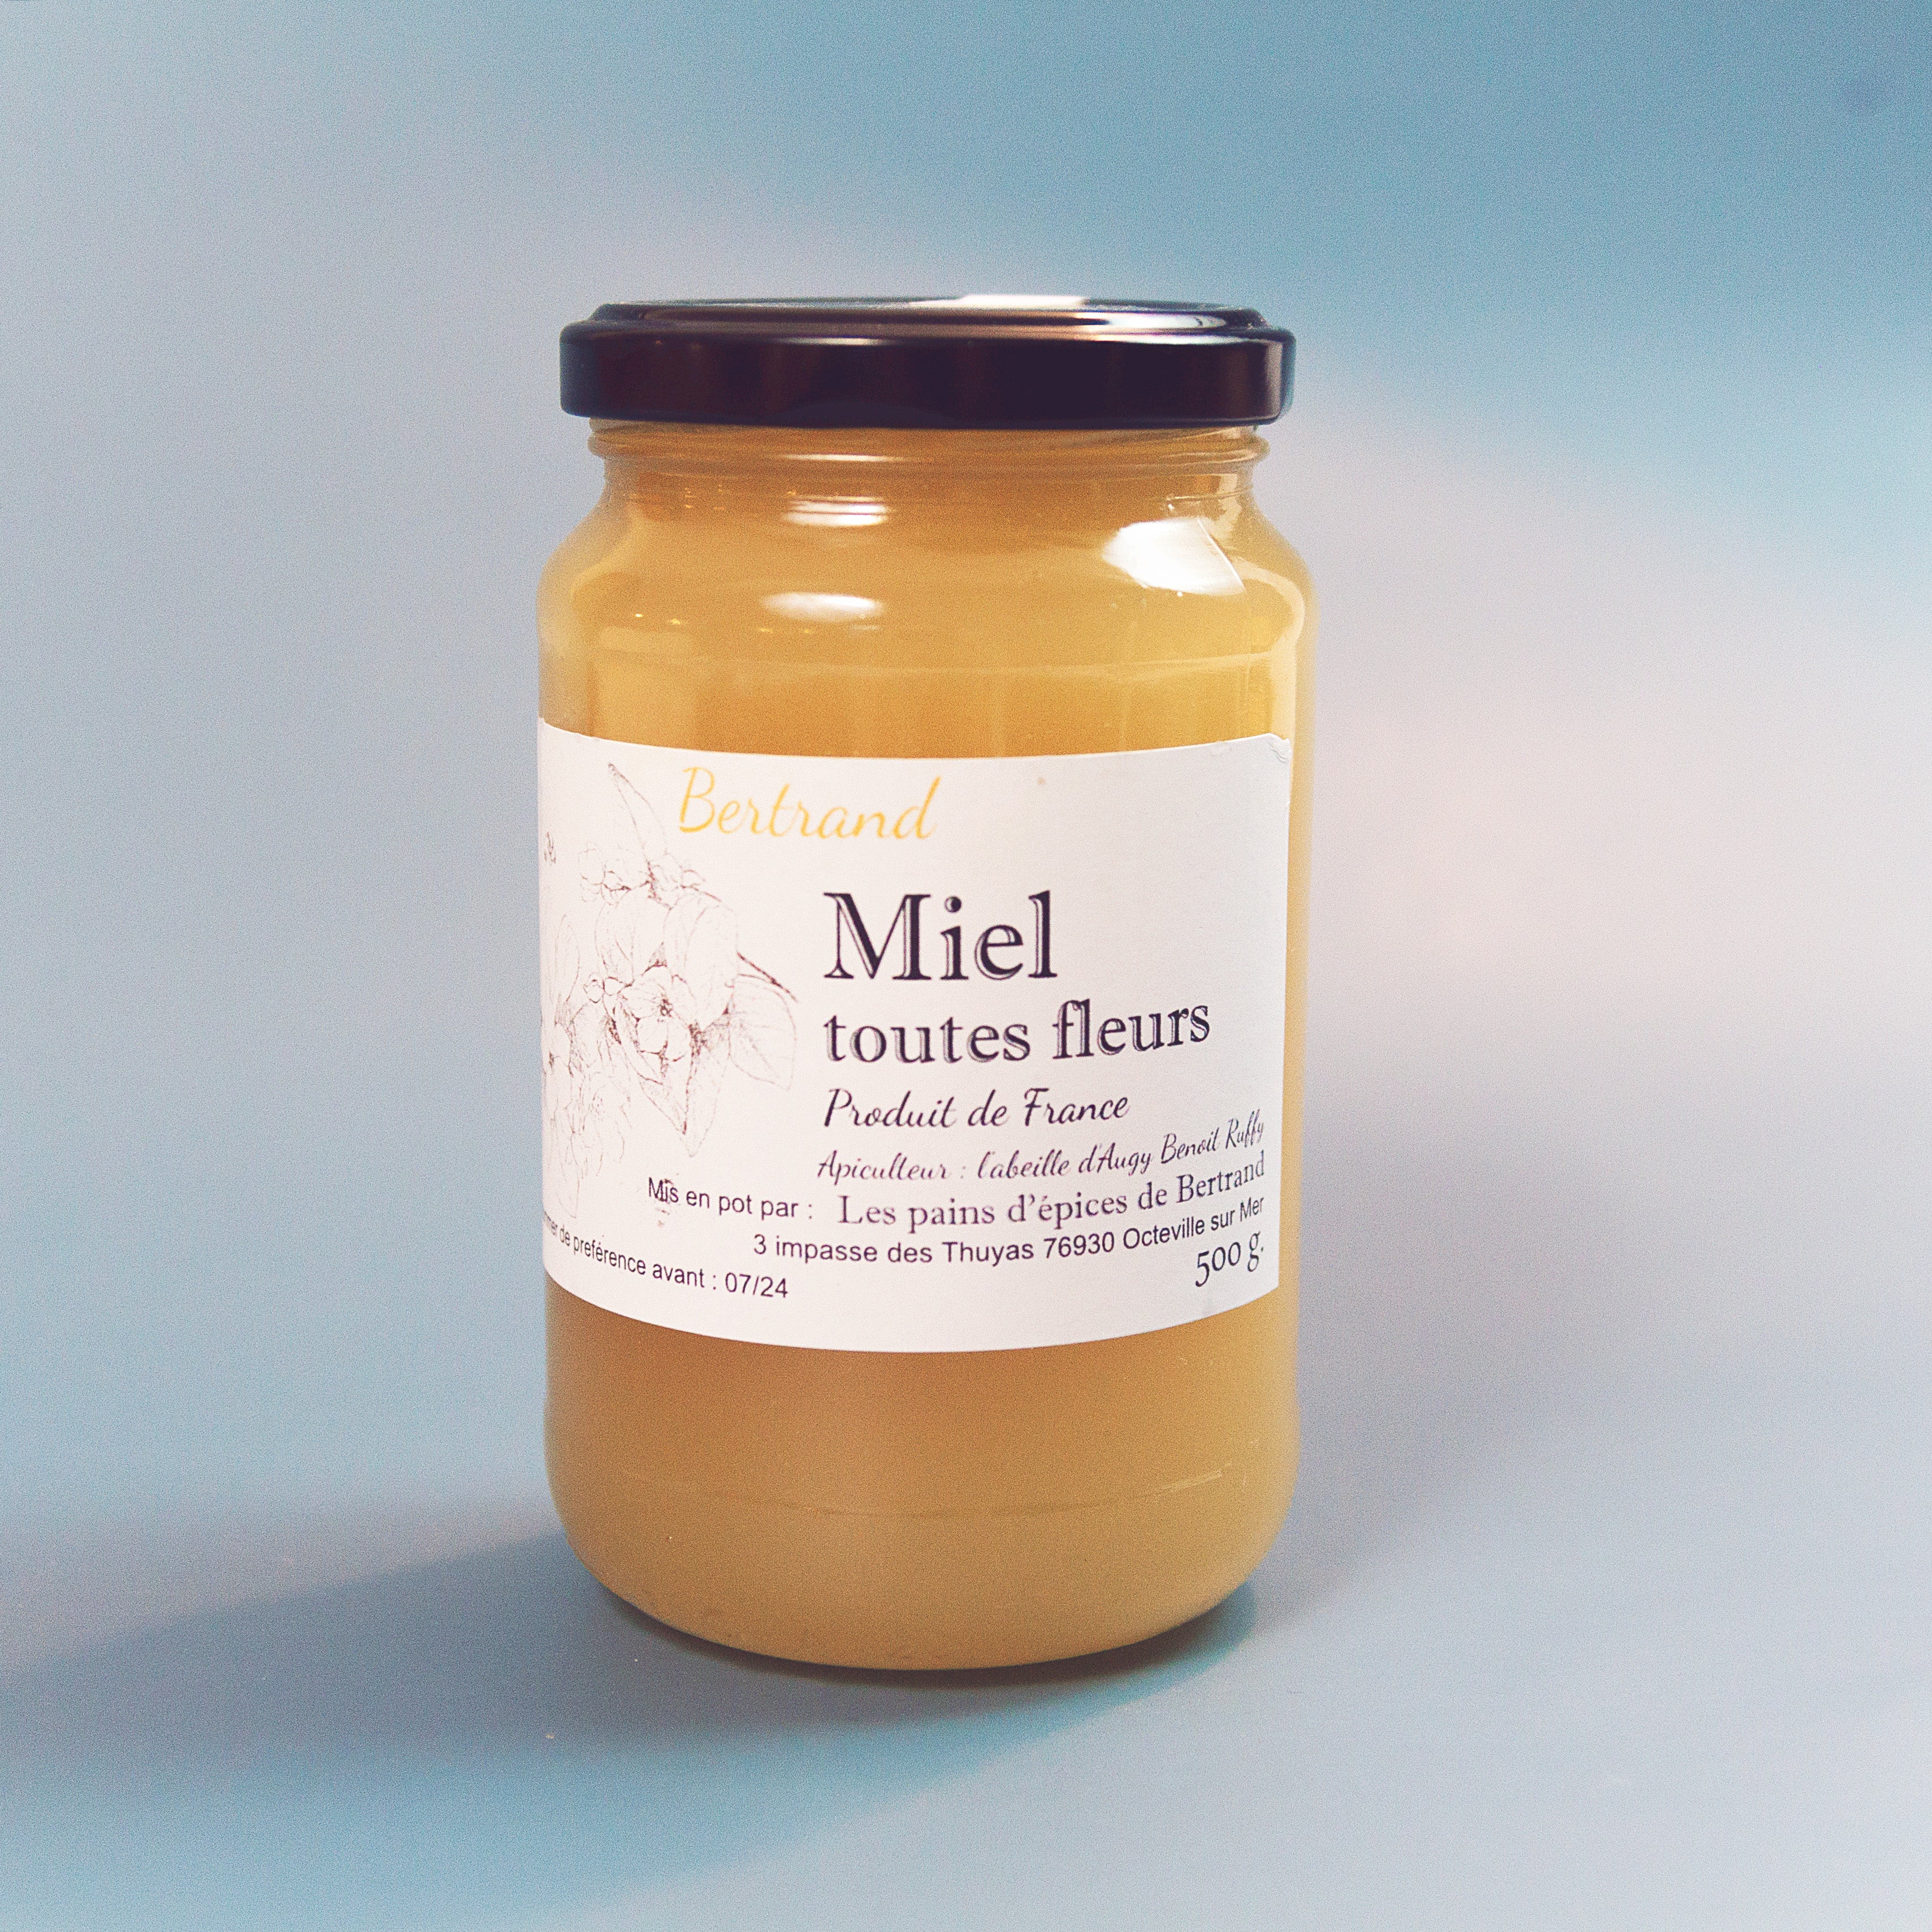 French Honey (All Flowers of France) - Miel toutes fleurs de France